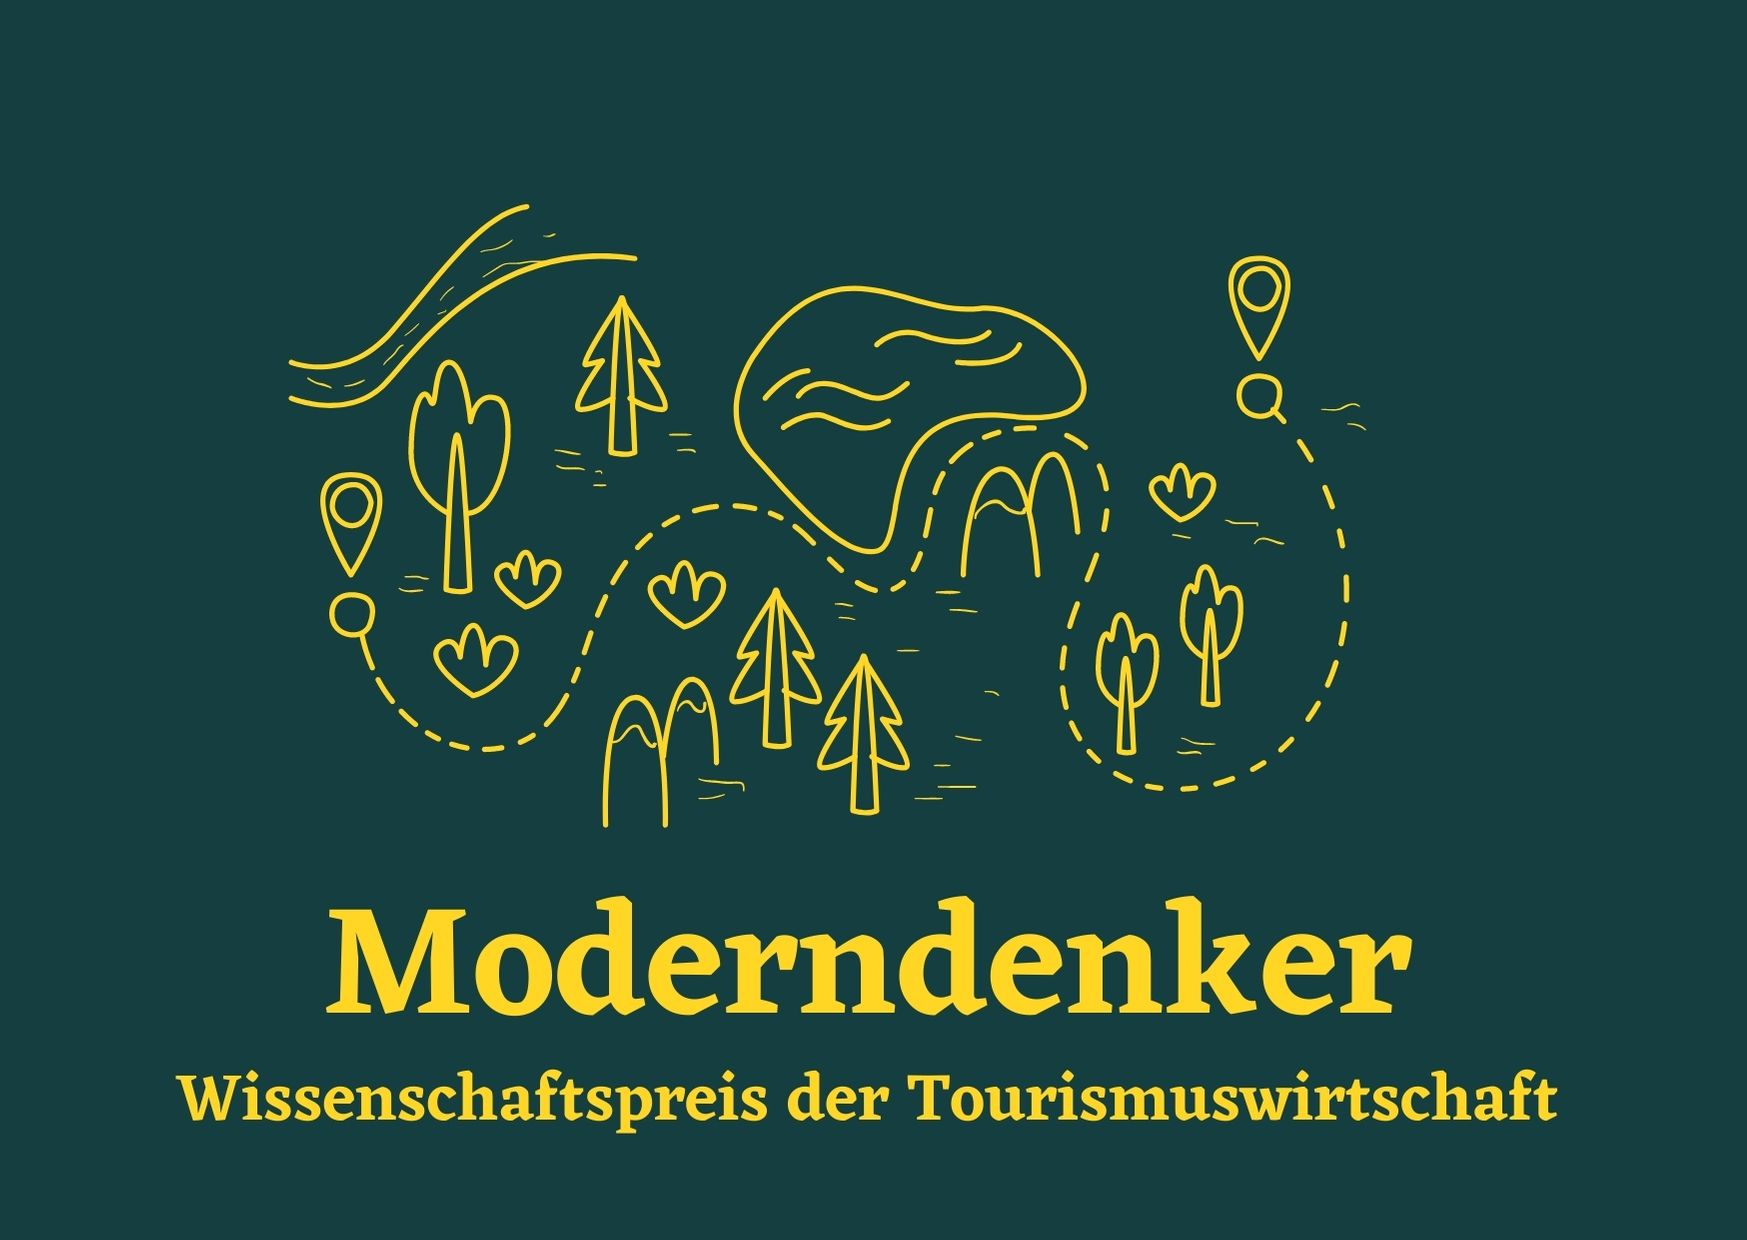 Moderndenker Logo